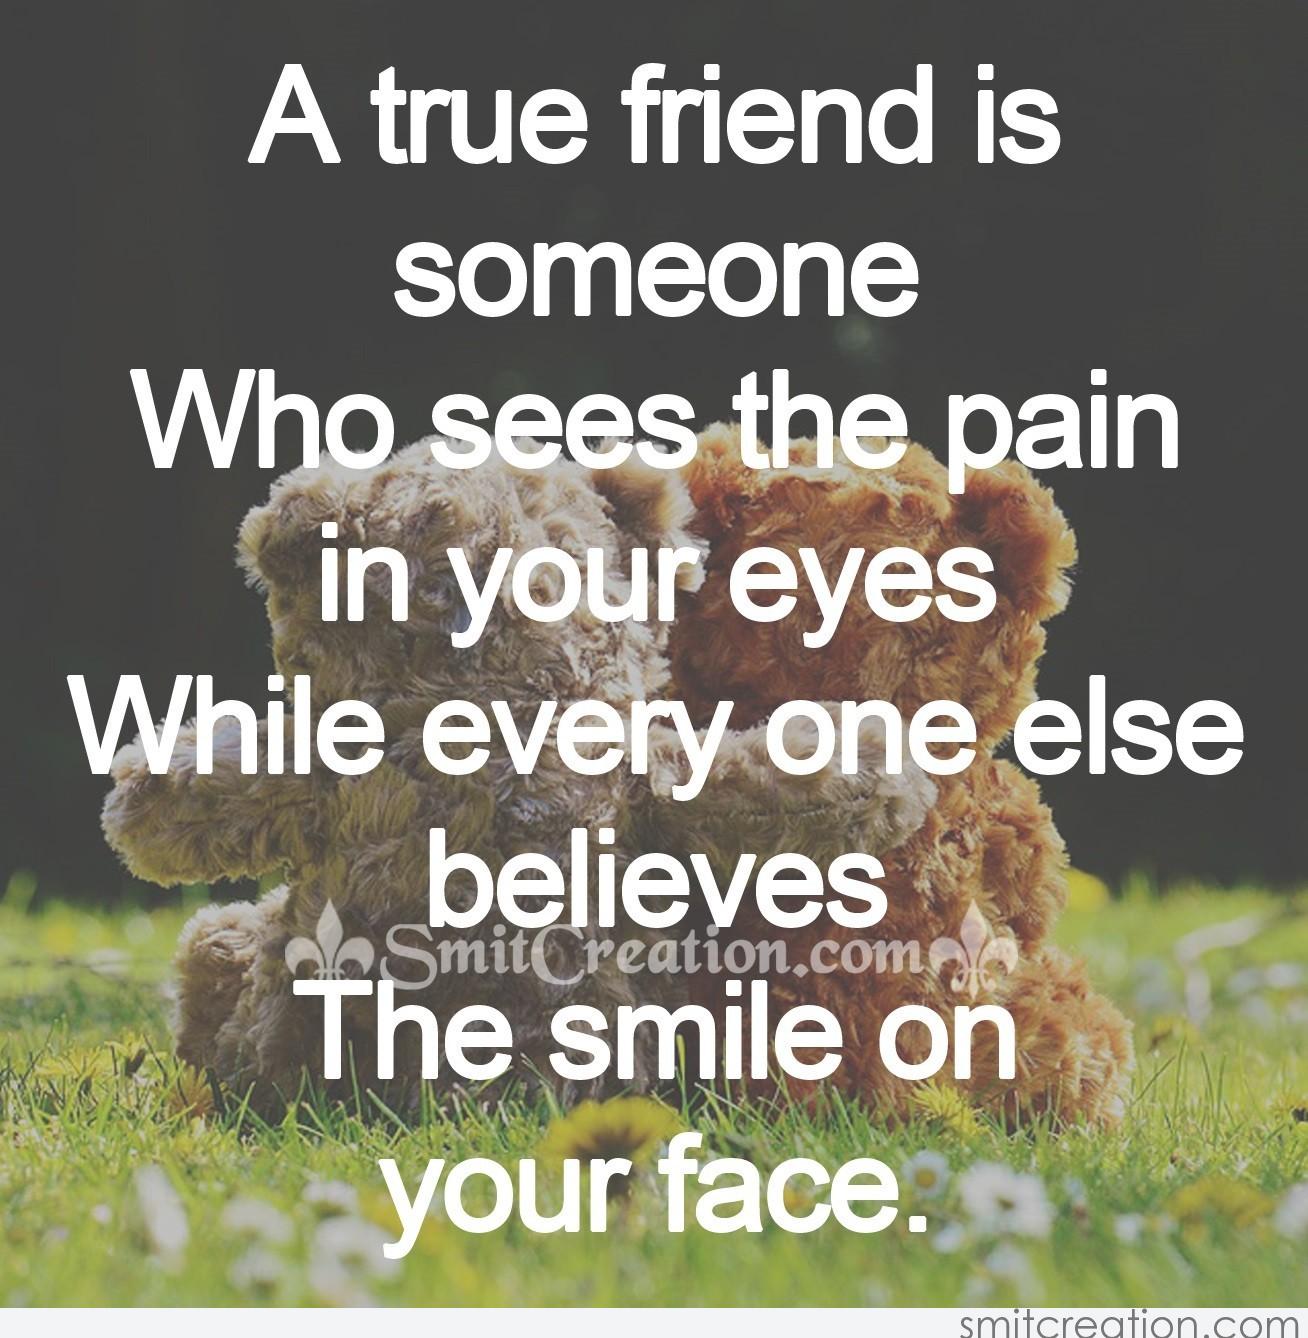 A true friend is someone - SmitCreation.com